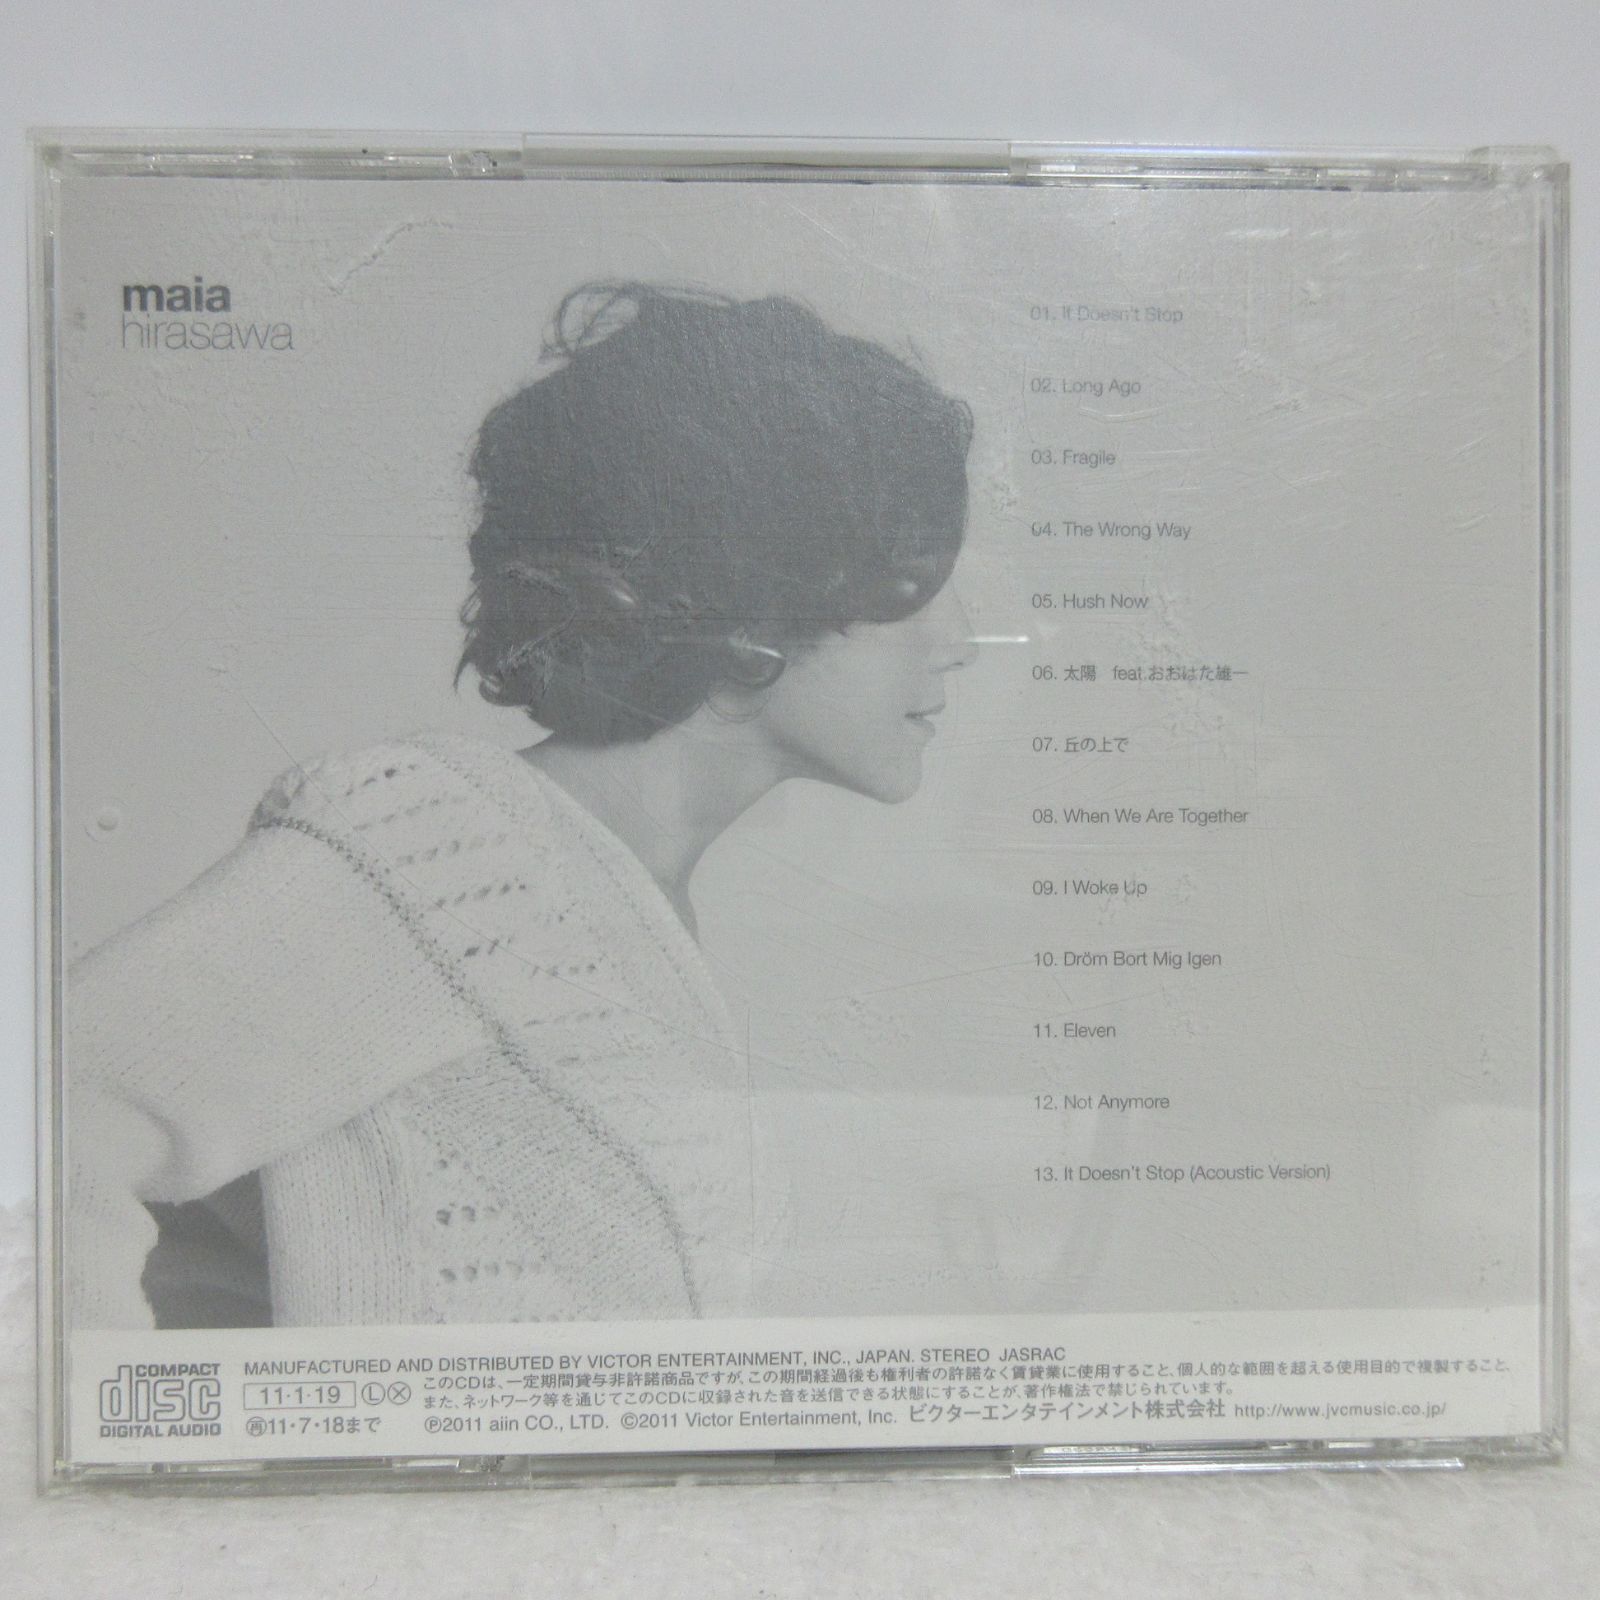 【CD】マイア・ヒラサワ/maia Hirasawa